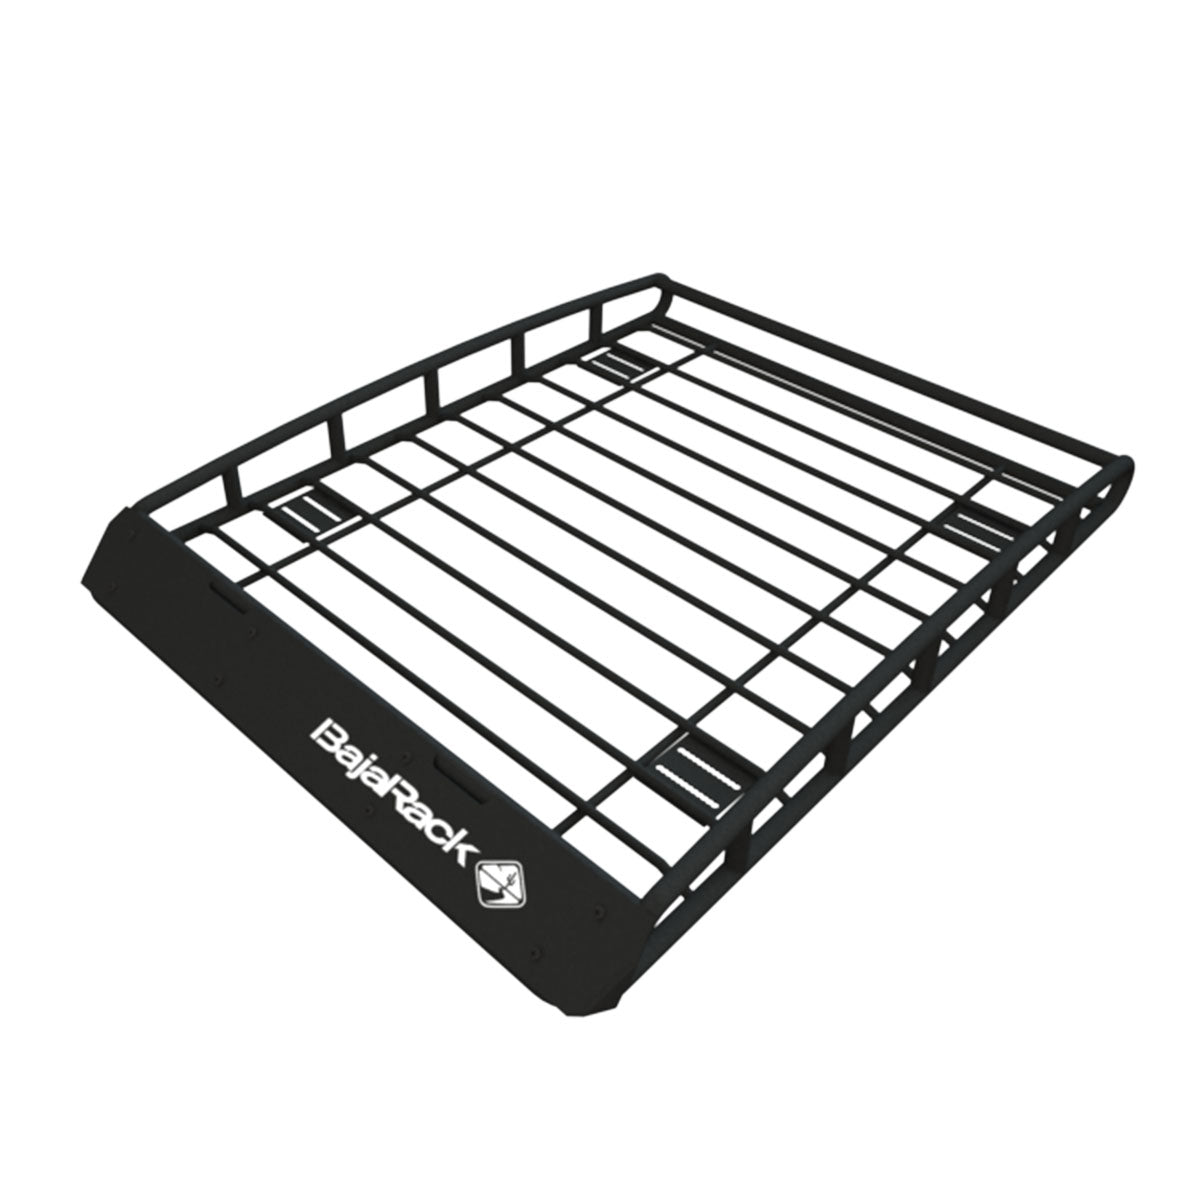 Standard Basket Roof Rack For Subaru by BajaRack